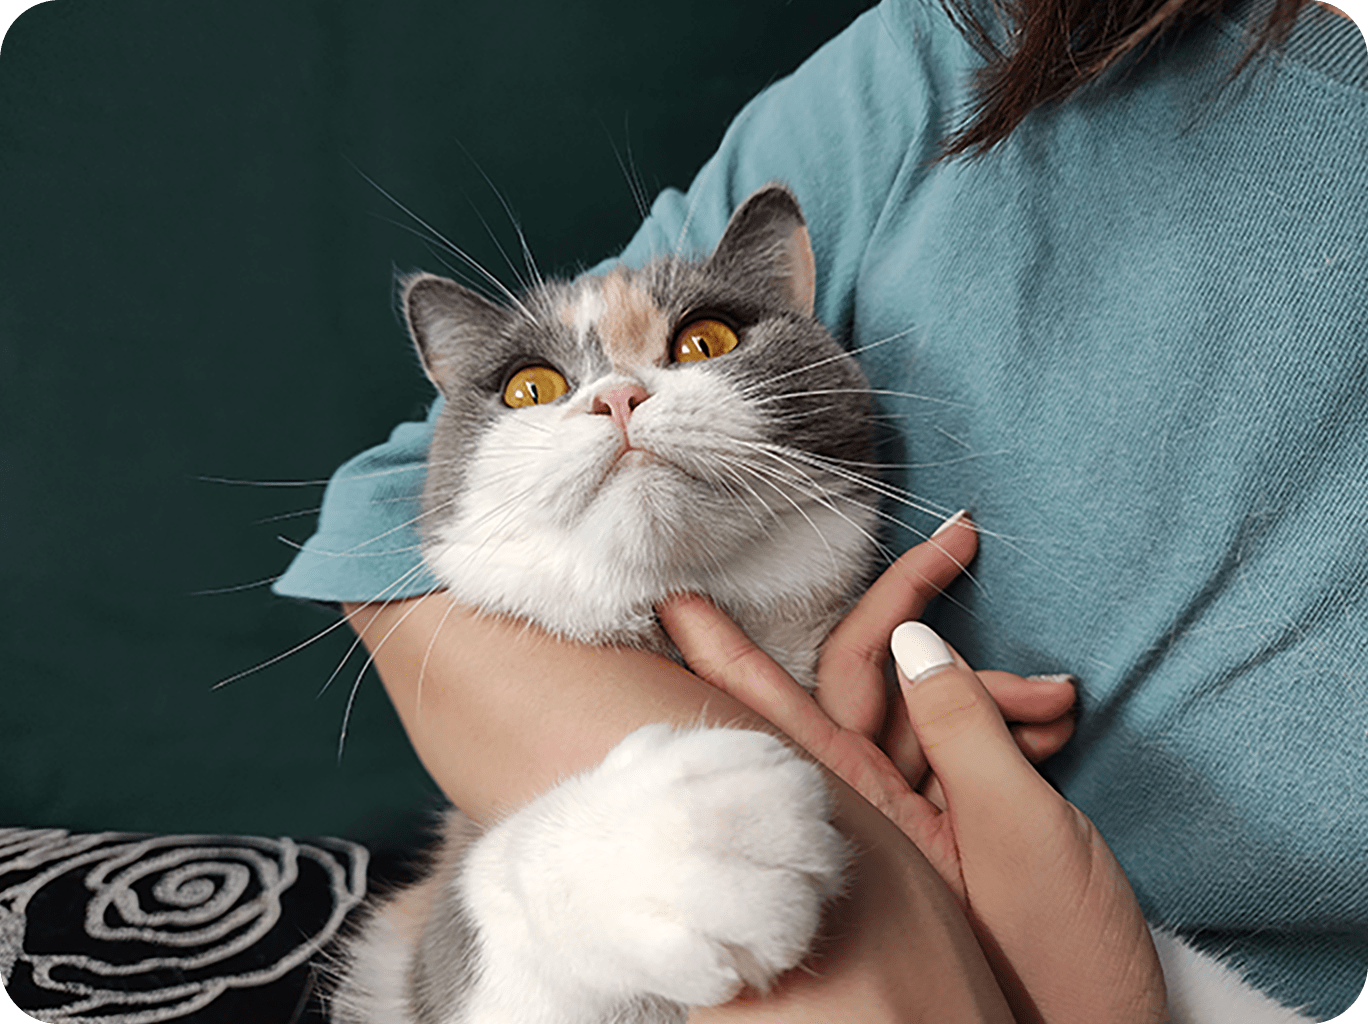 这是参与三星ISOCELL照片展的ISOCELL以2亿像素表现的女人怀里的猫的照片。